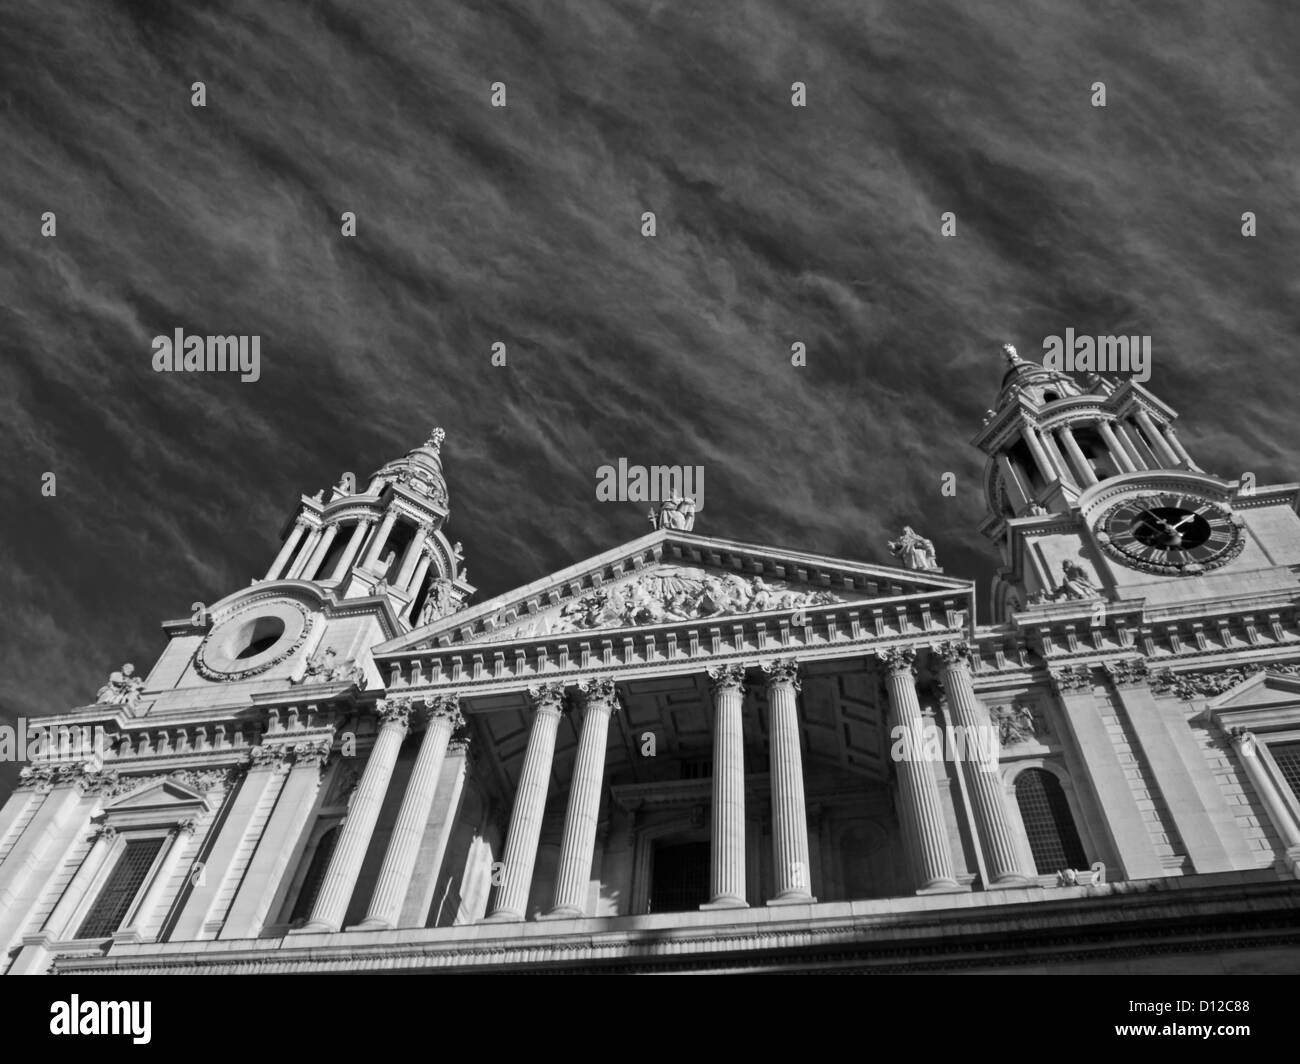 Vue avant de l'ouest de la Cathédrale St Paul (église cathédrale de Saint Paul l'Apôtre), City of London, Londres, Angleterre, RU Banque D'Images